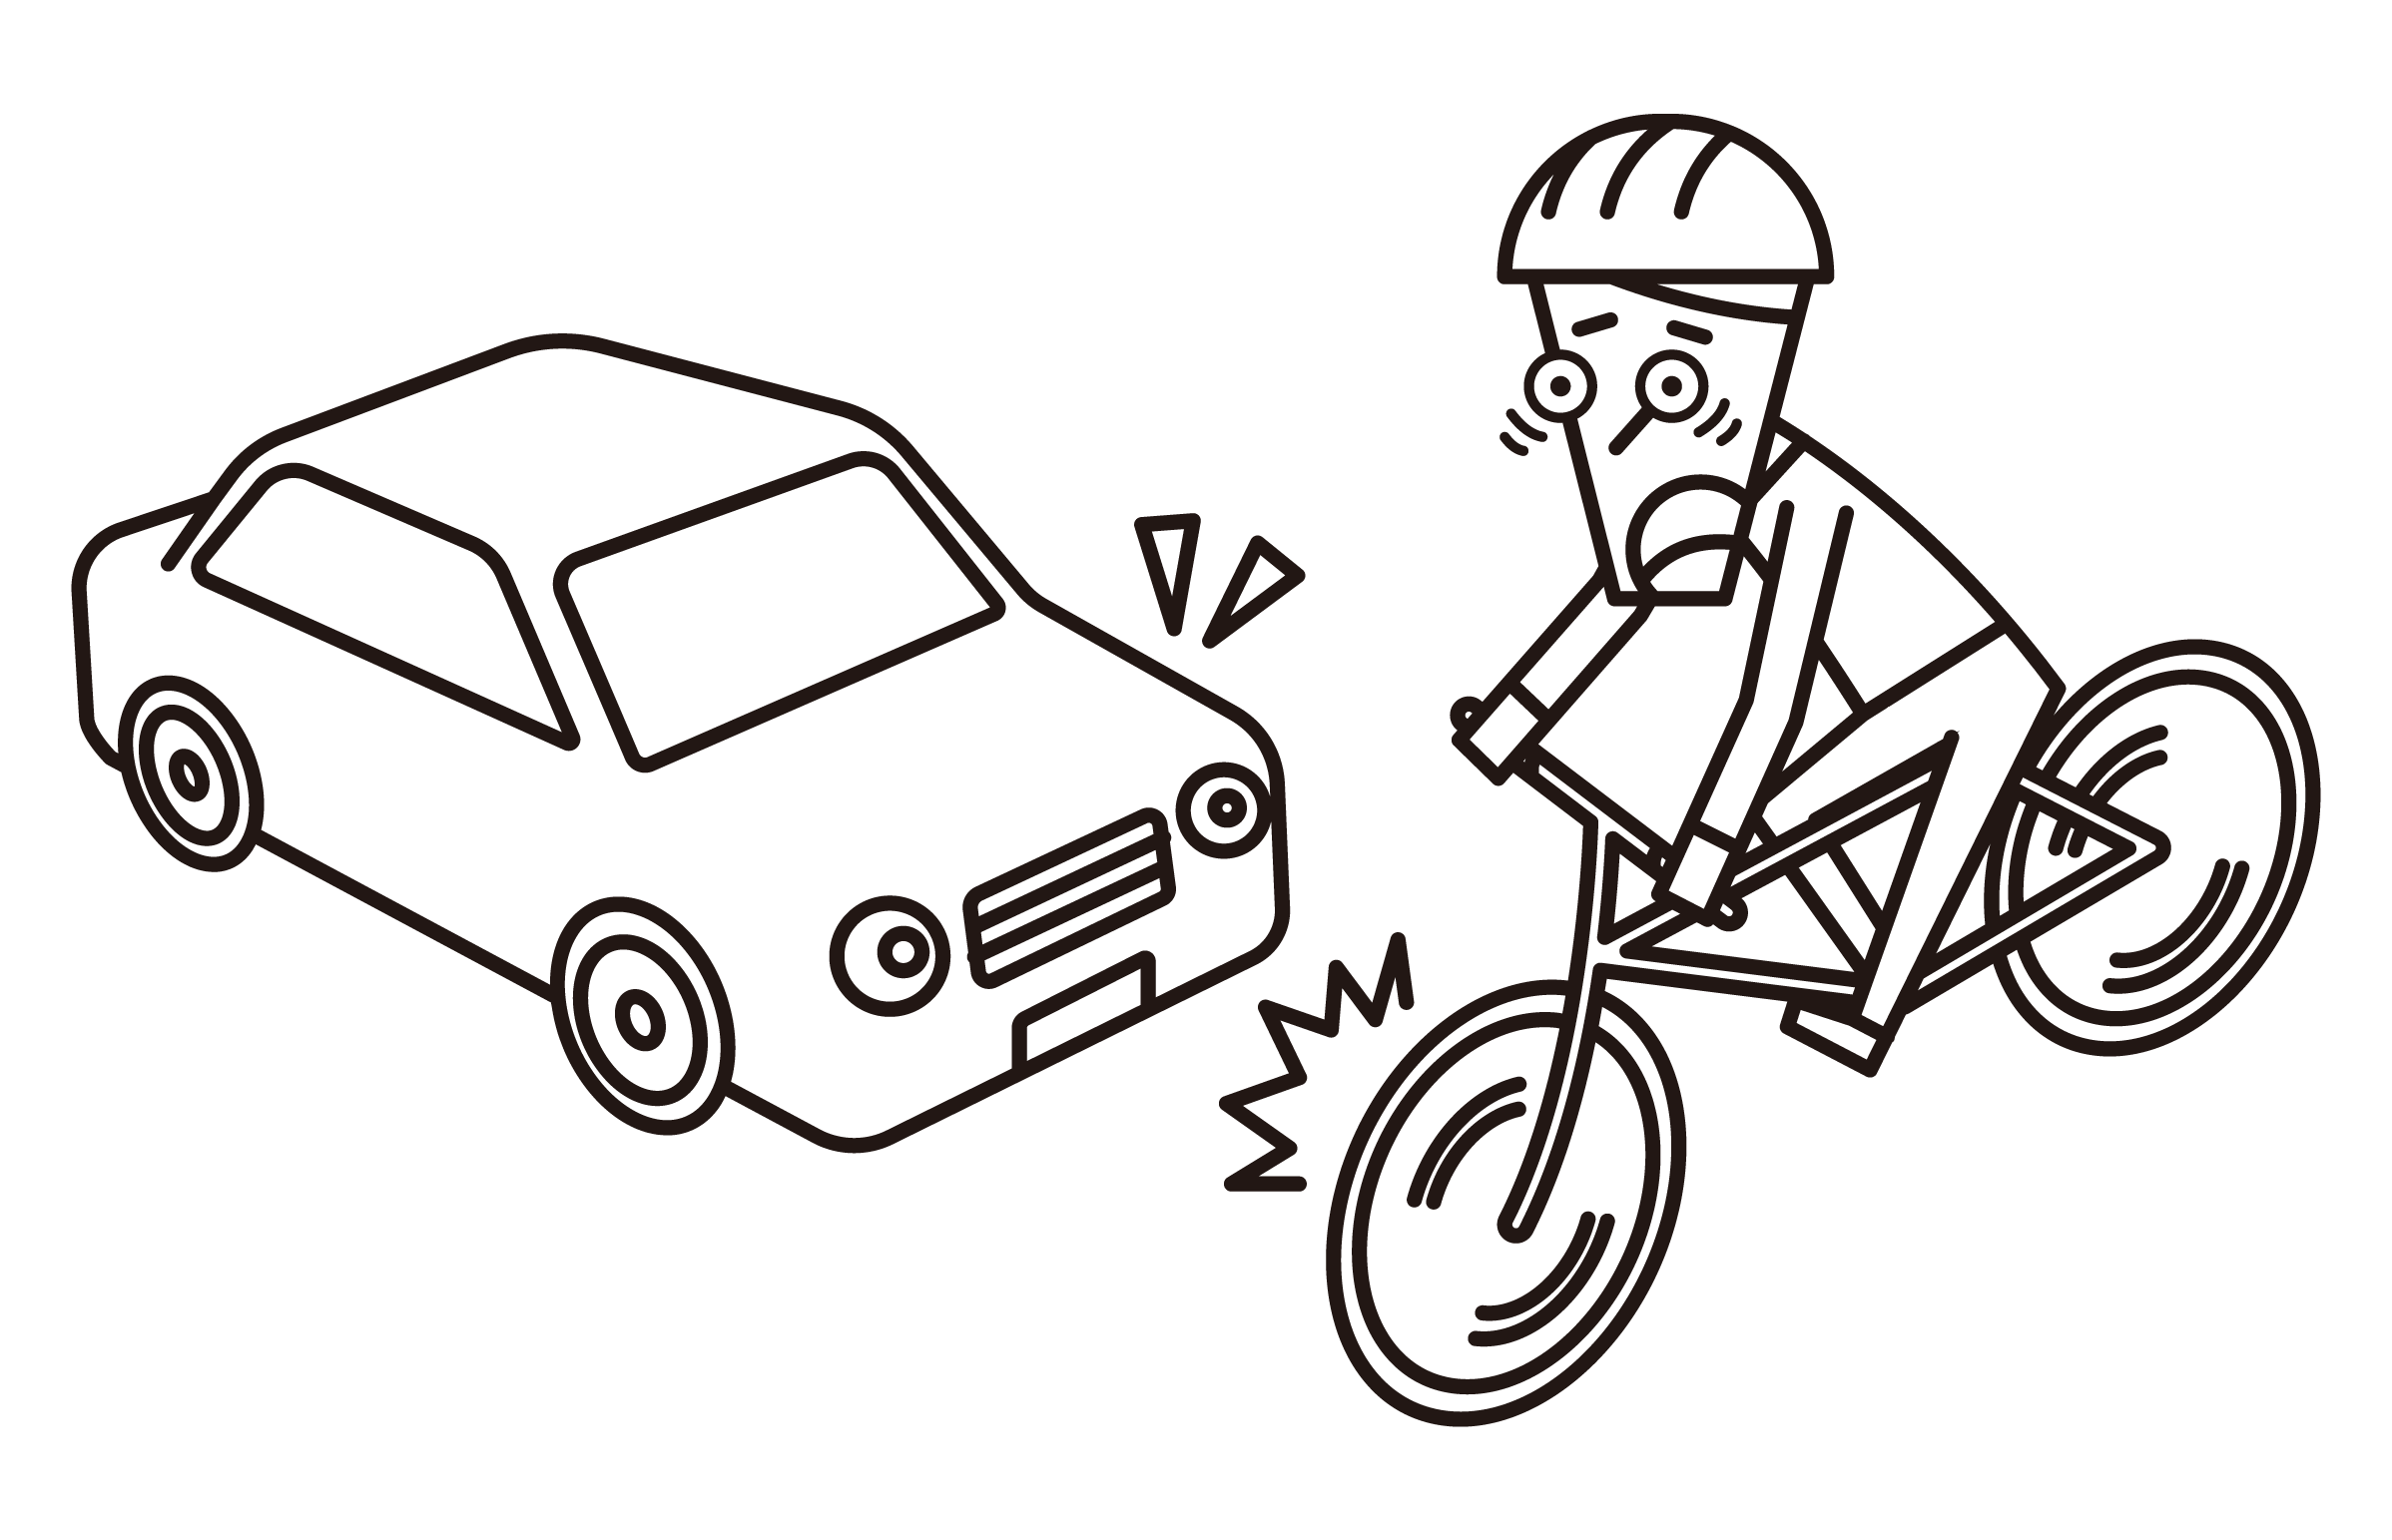 자동차와 충돌하려고하는 자전거 (남성)의 그림